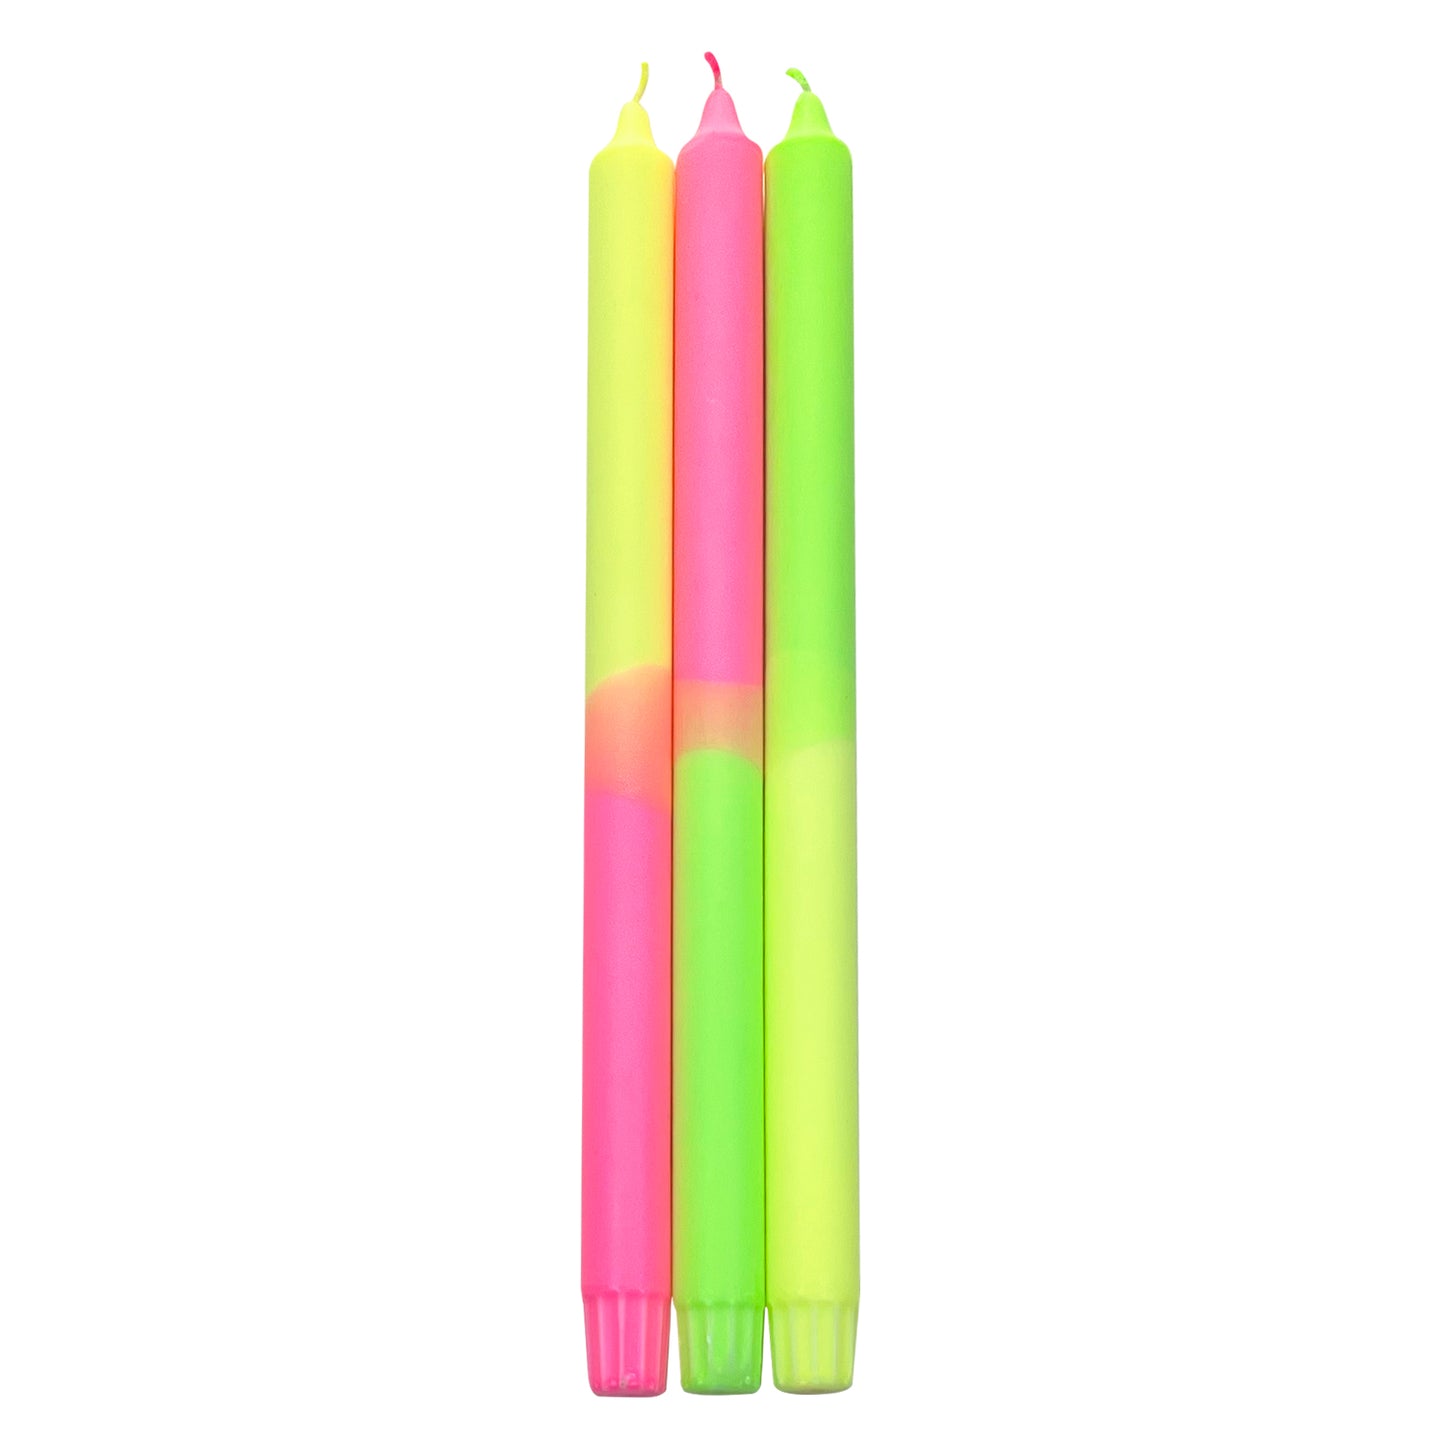 Dip Dye Neon 35 cm - XL - Candle - Set of 3